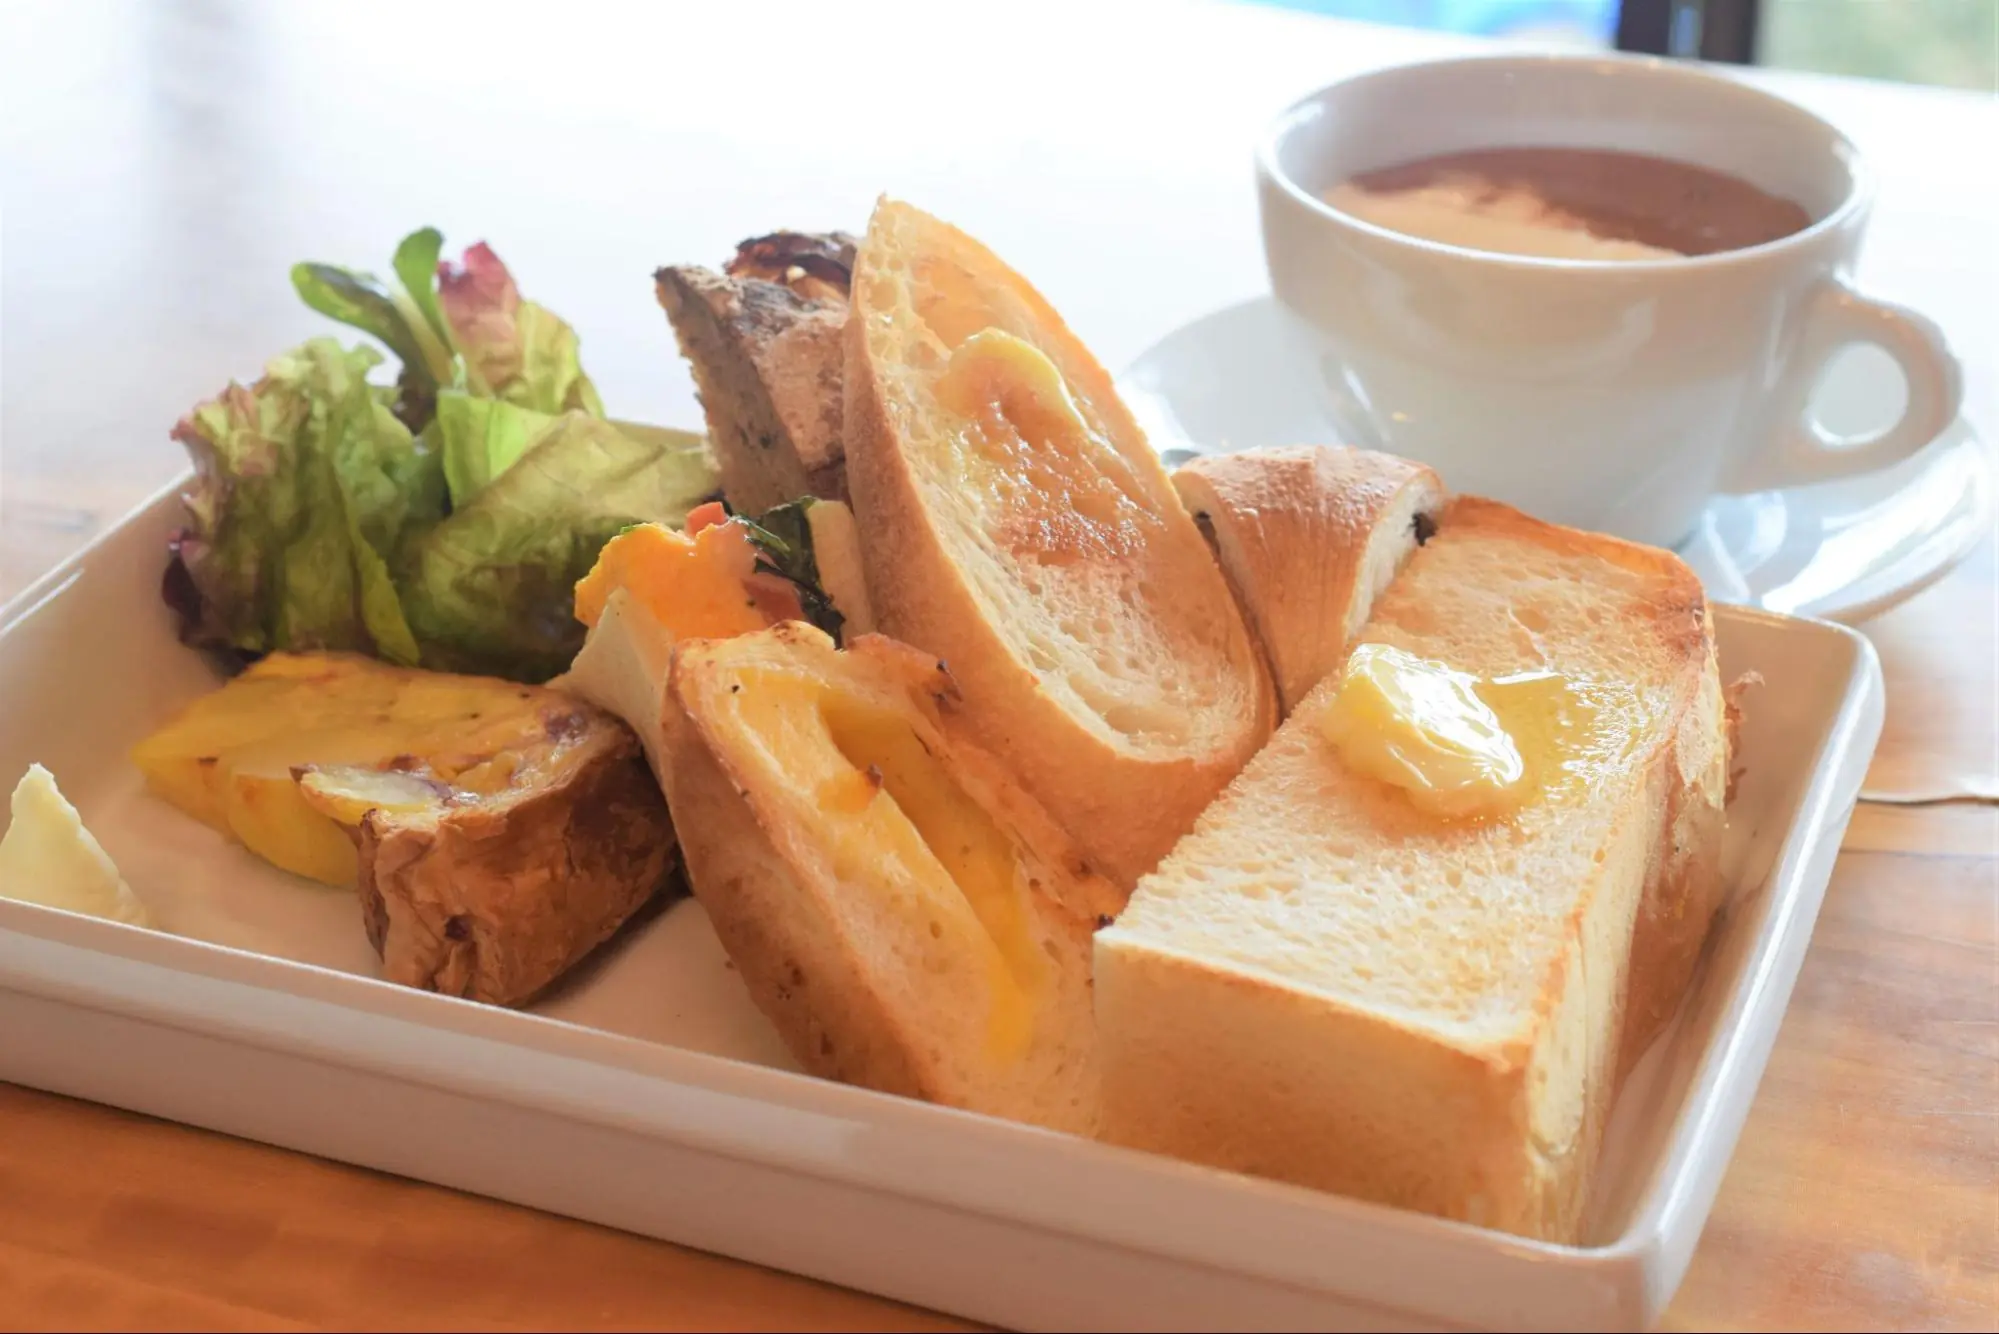 古民宅面包店“rustico4  ”在具有岐阜风情的街道川原町，极品面包早餐!